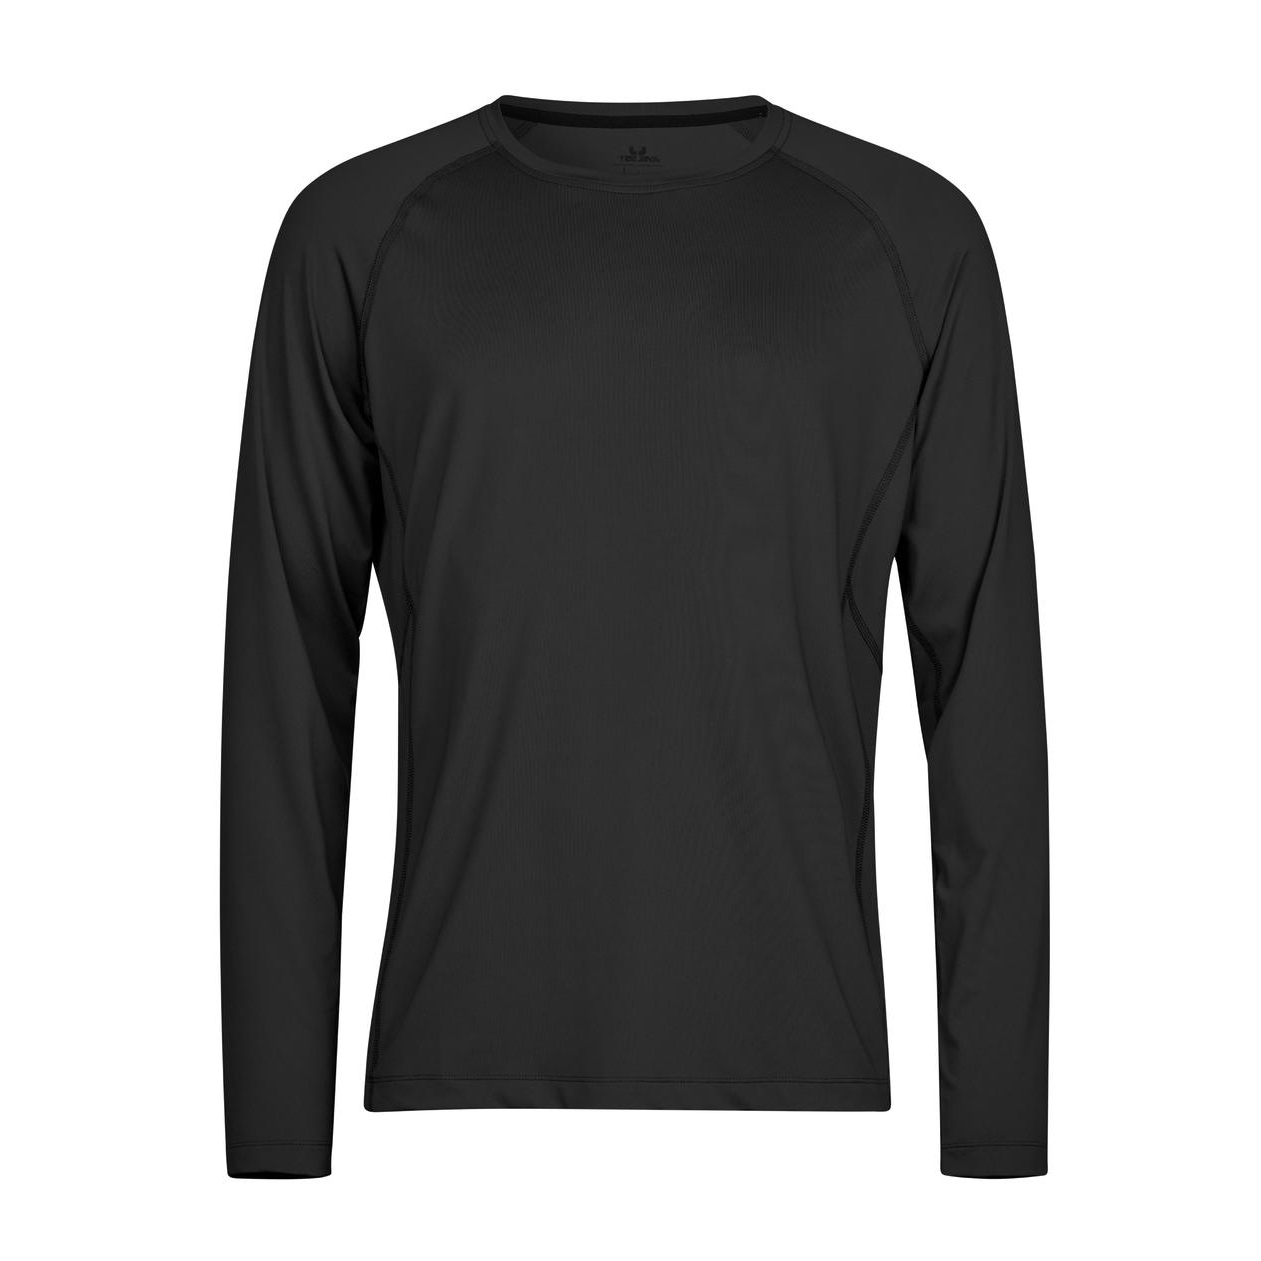 Triko pánské Stedman Tee Jays CoolDry tričko s dlouhými rukávy - černé, S